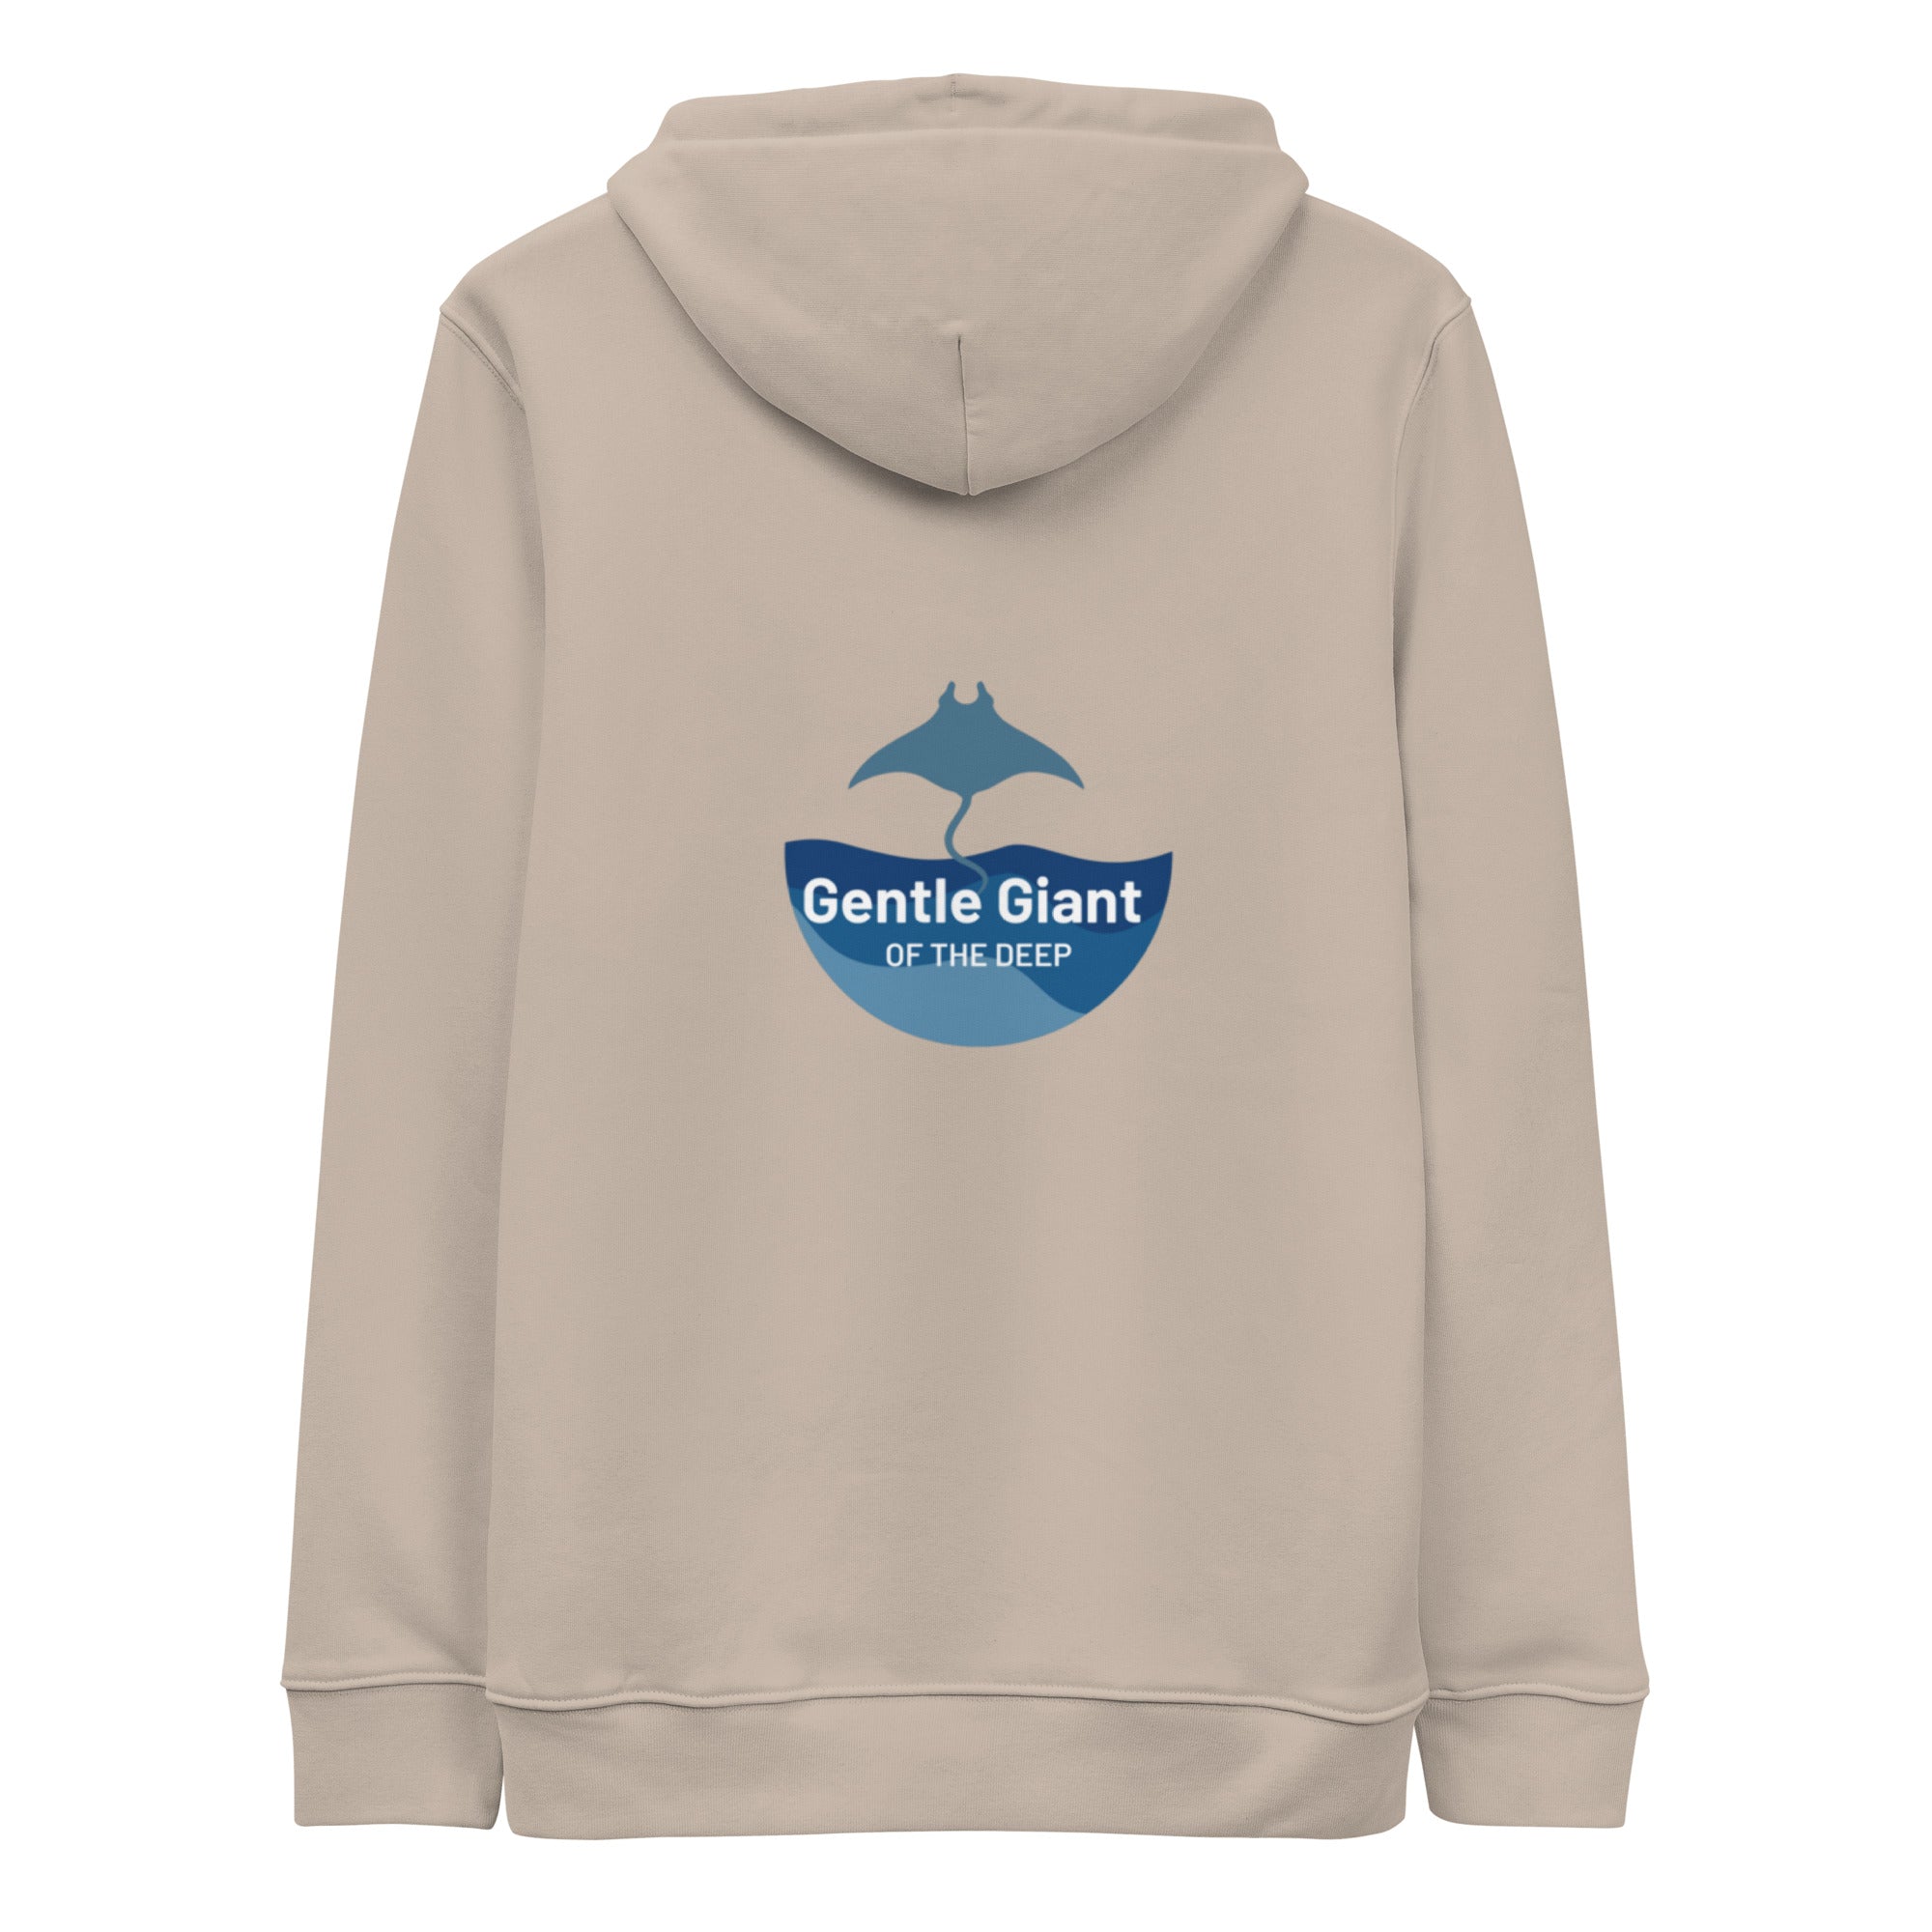 Gentle Giant hoodie by Tropical Seas Clothing